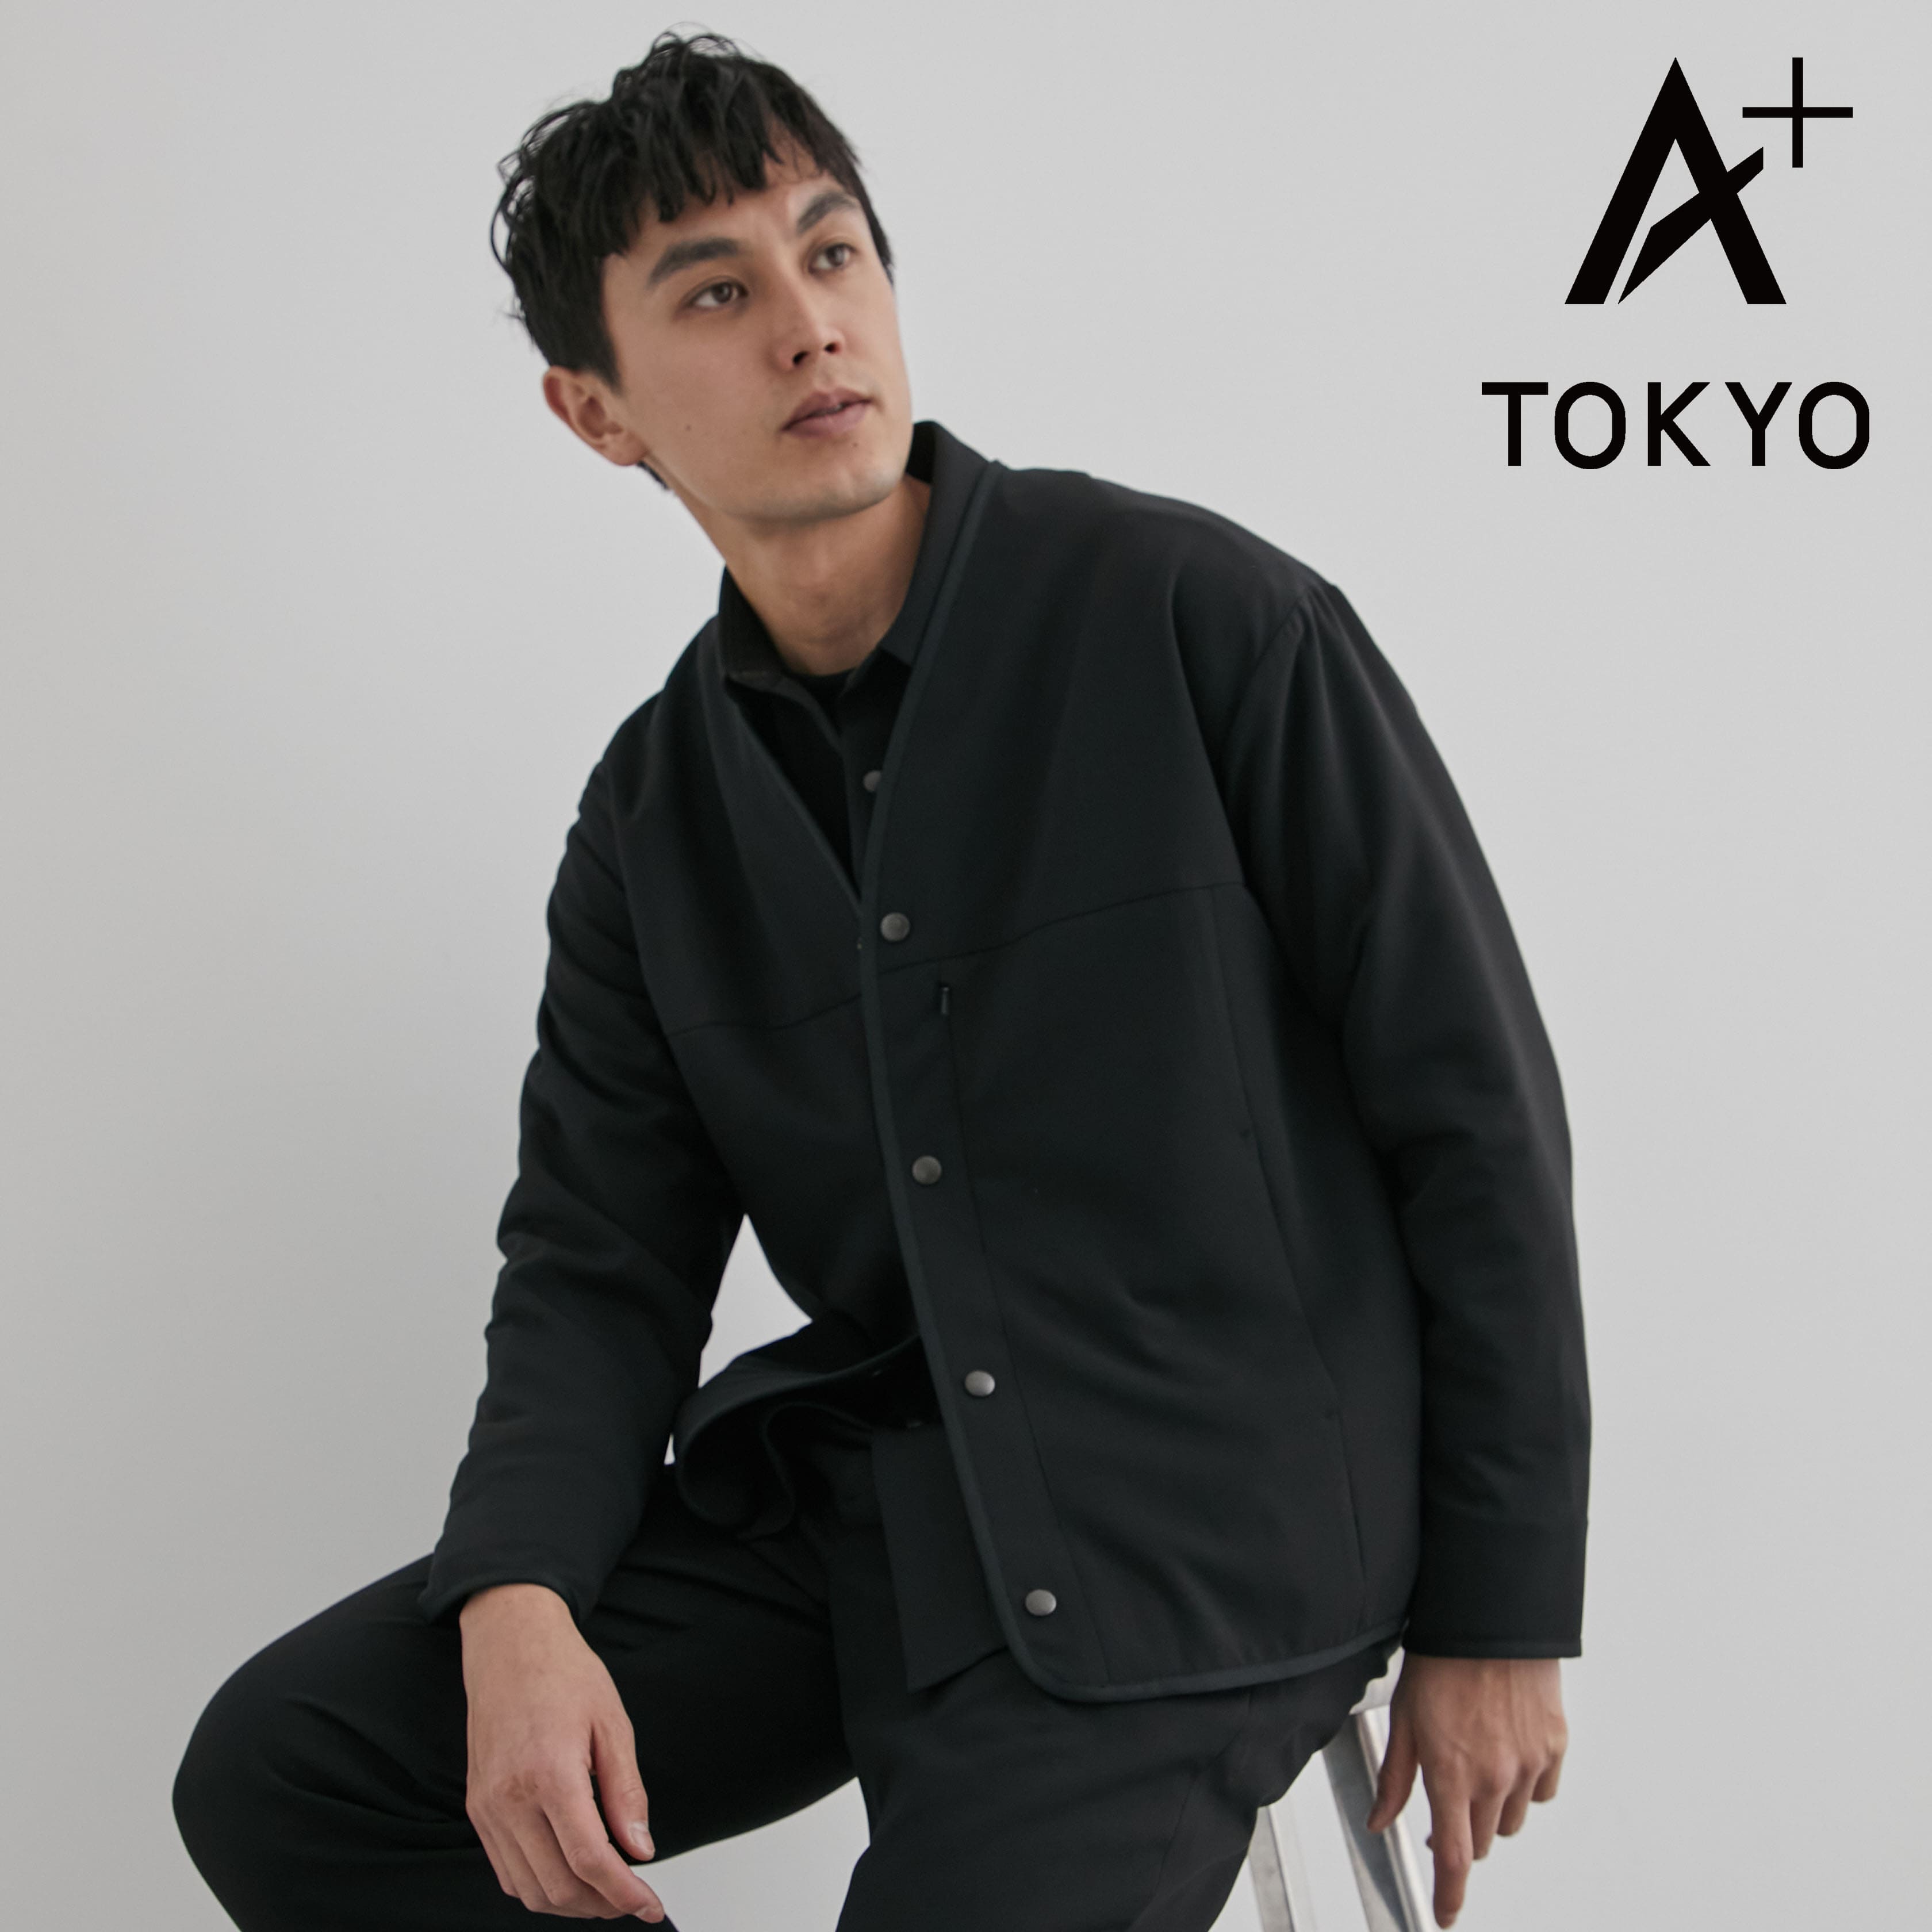 A + TOKYO